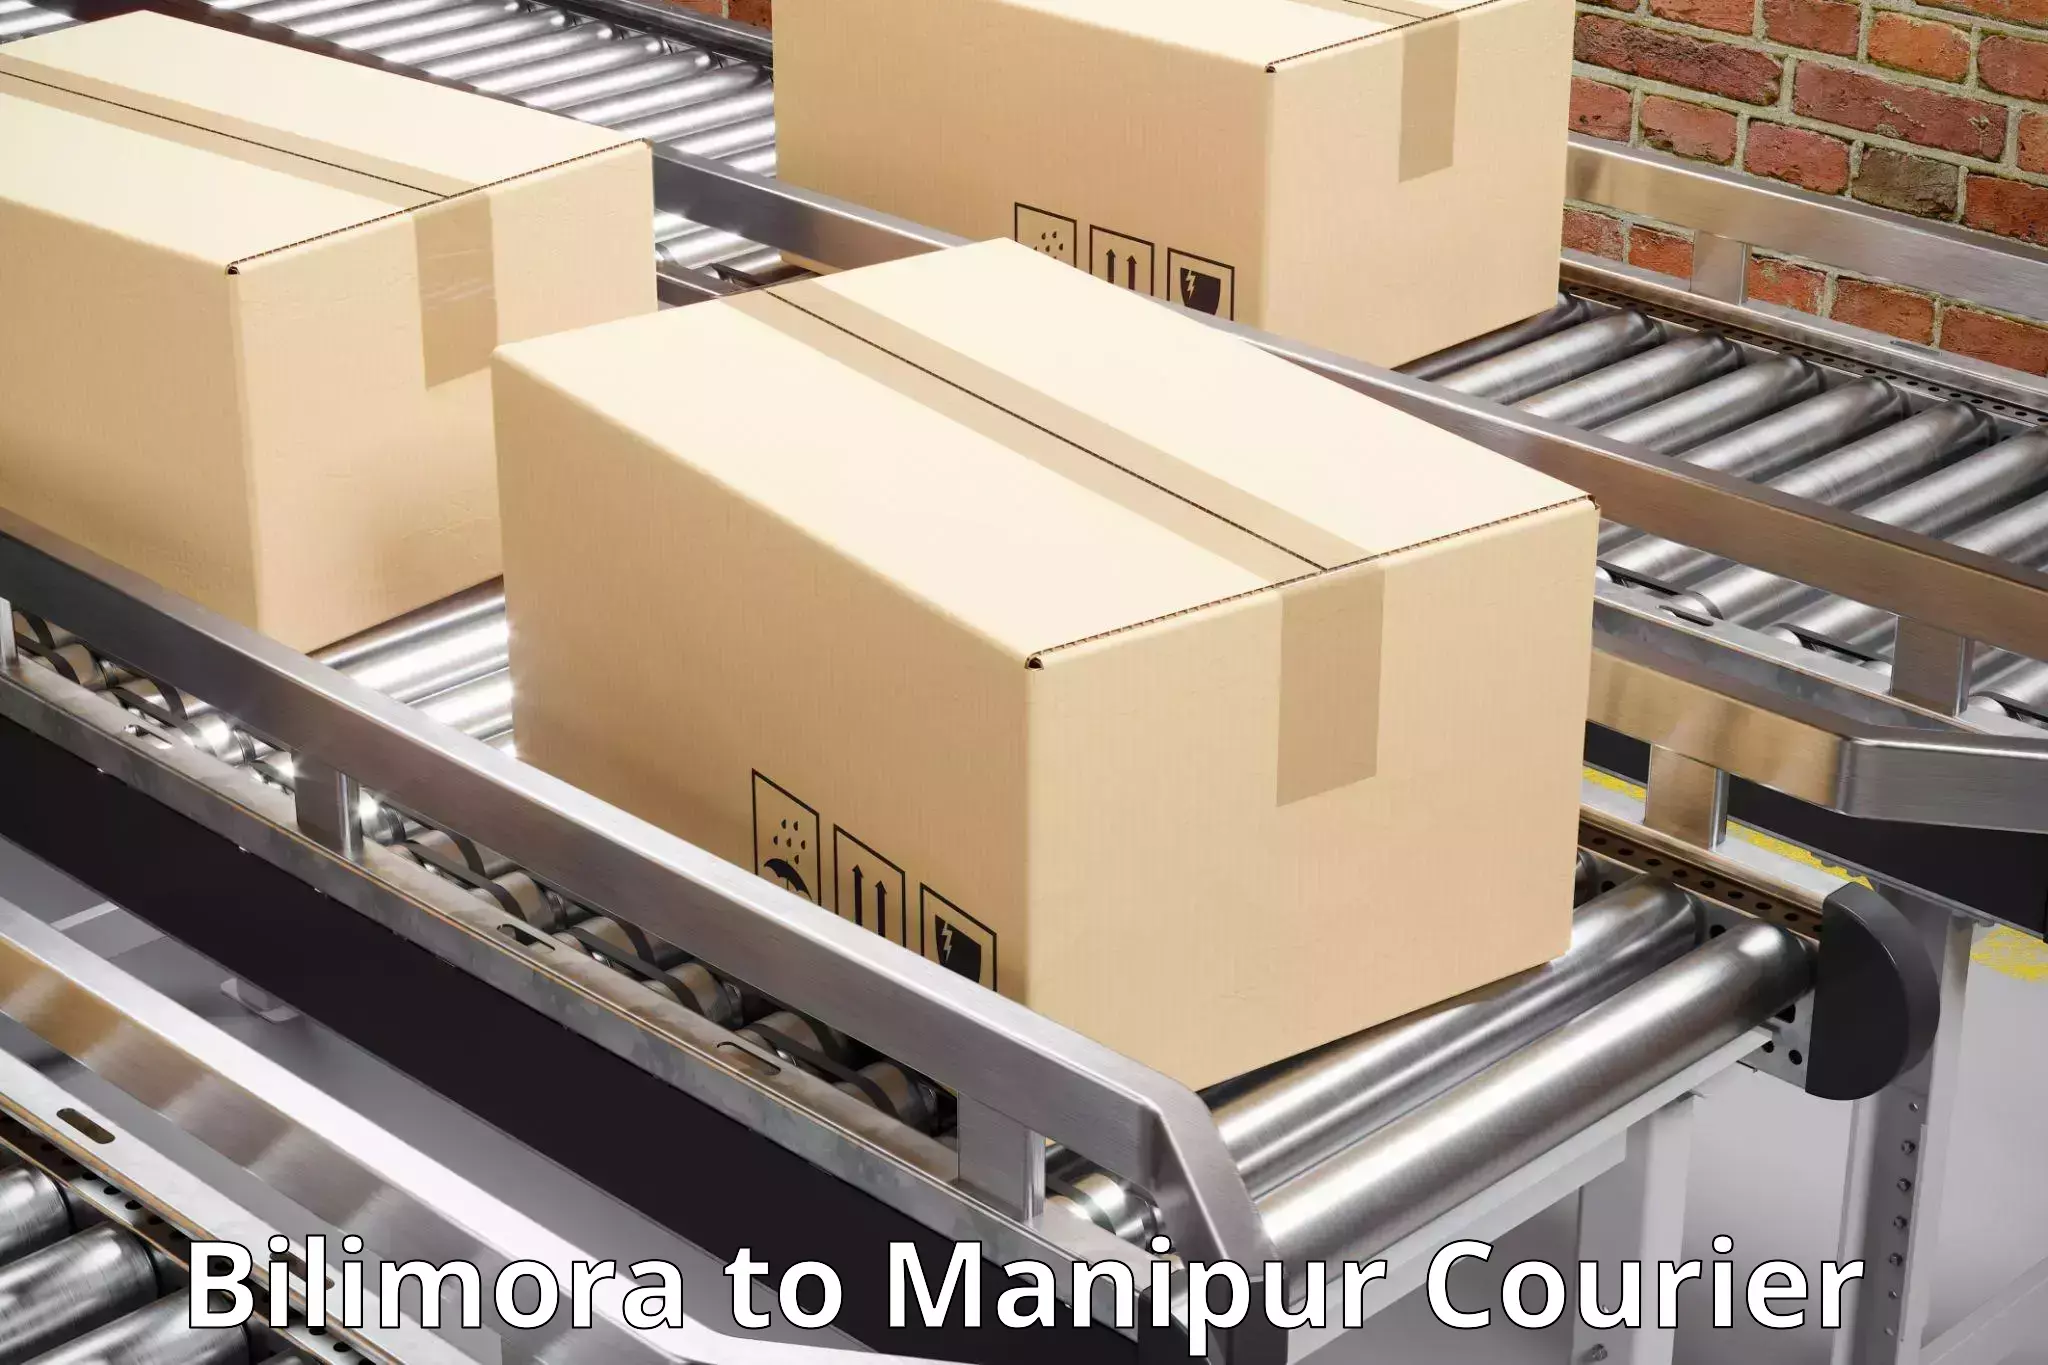 Customer-oriented courier services Bilimora to Senapati